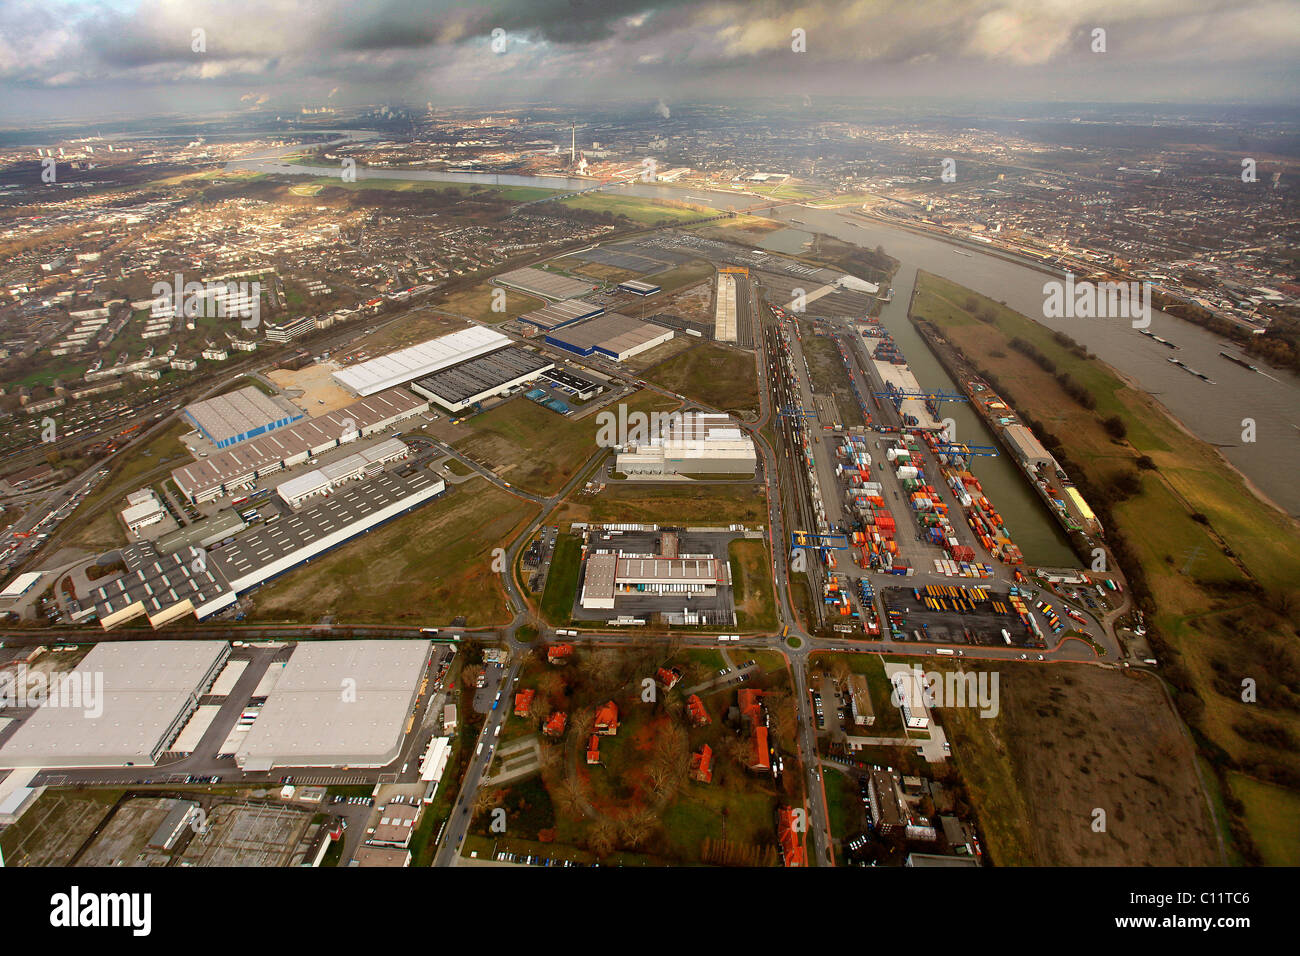 Vista aerea, terminale per container container port, Reno, Duisport, Logport I, Rheinhausen, Duisburg, Ruhrgebiet regione Foto Stock